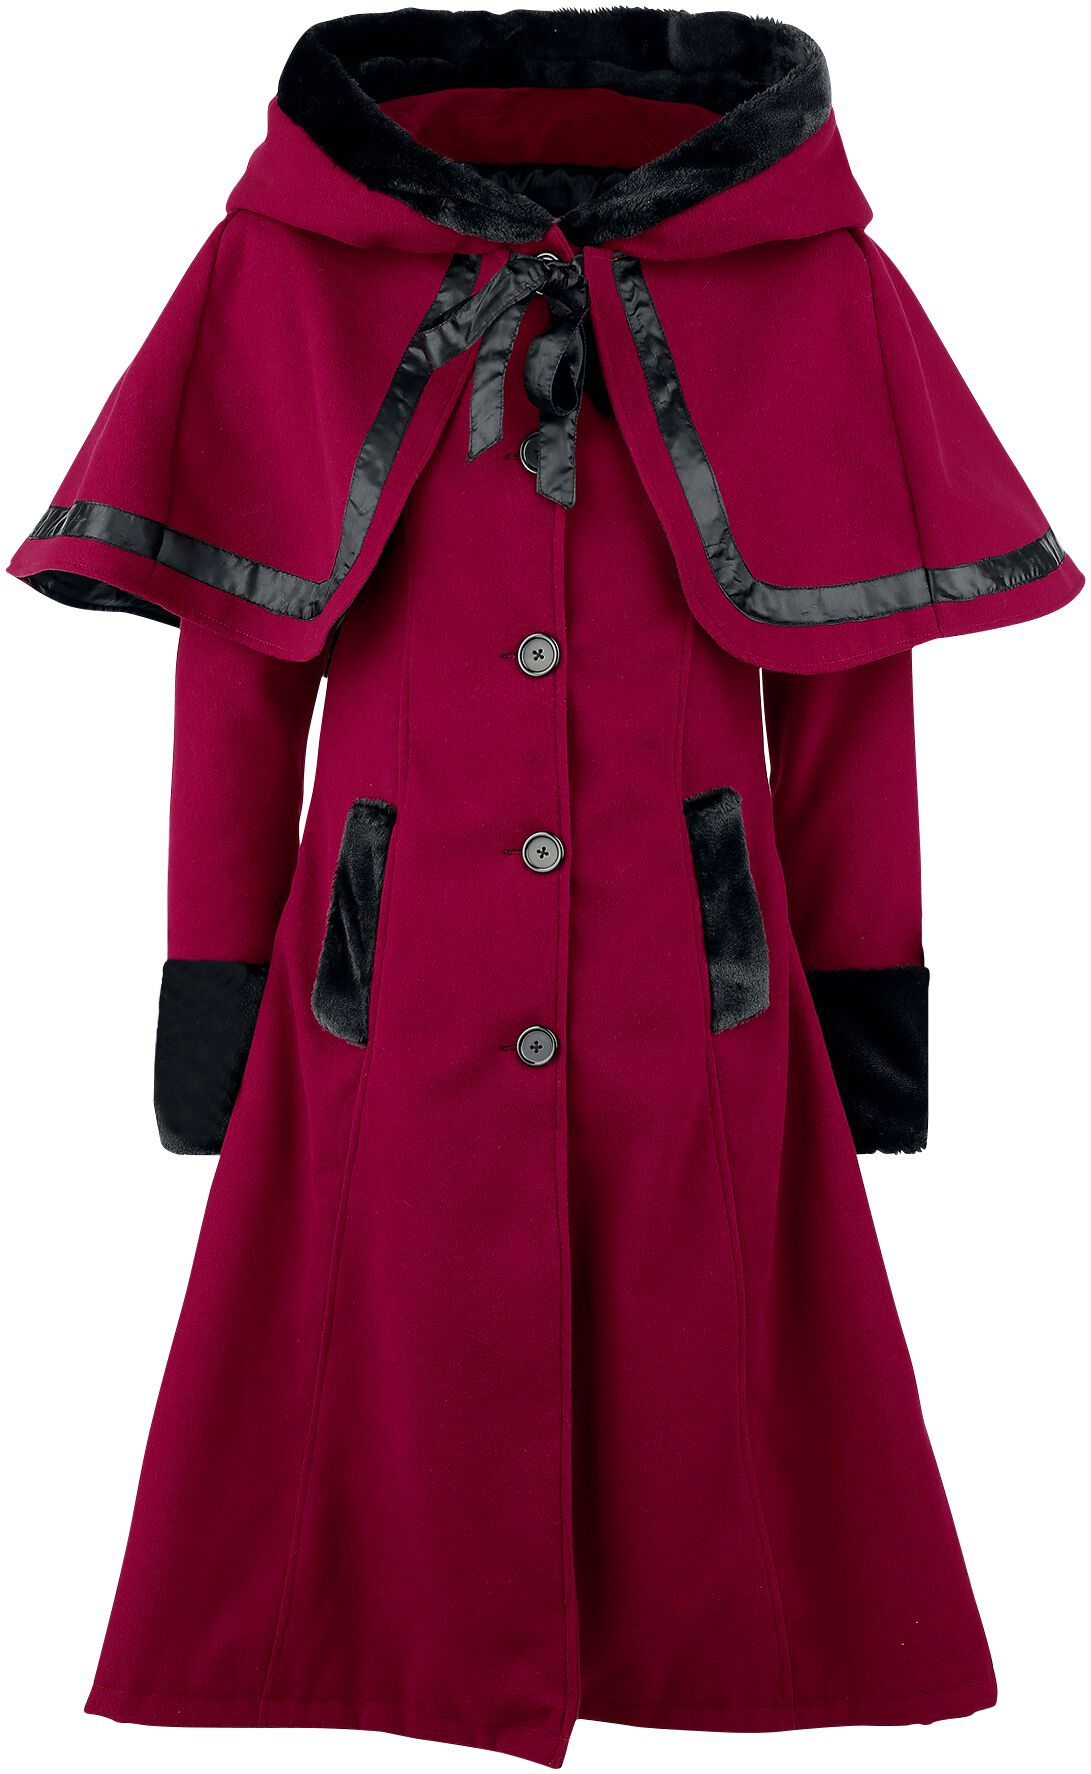 Manteau d'hiver de Vixxsin - Manteau Elena - S à 5XL - pour Femme - rouge